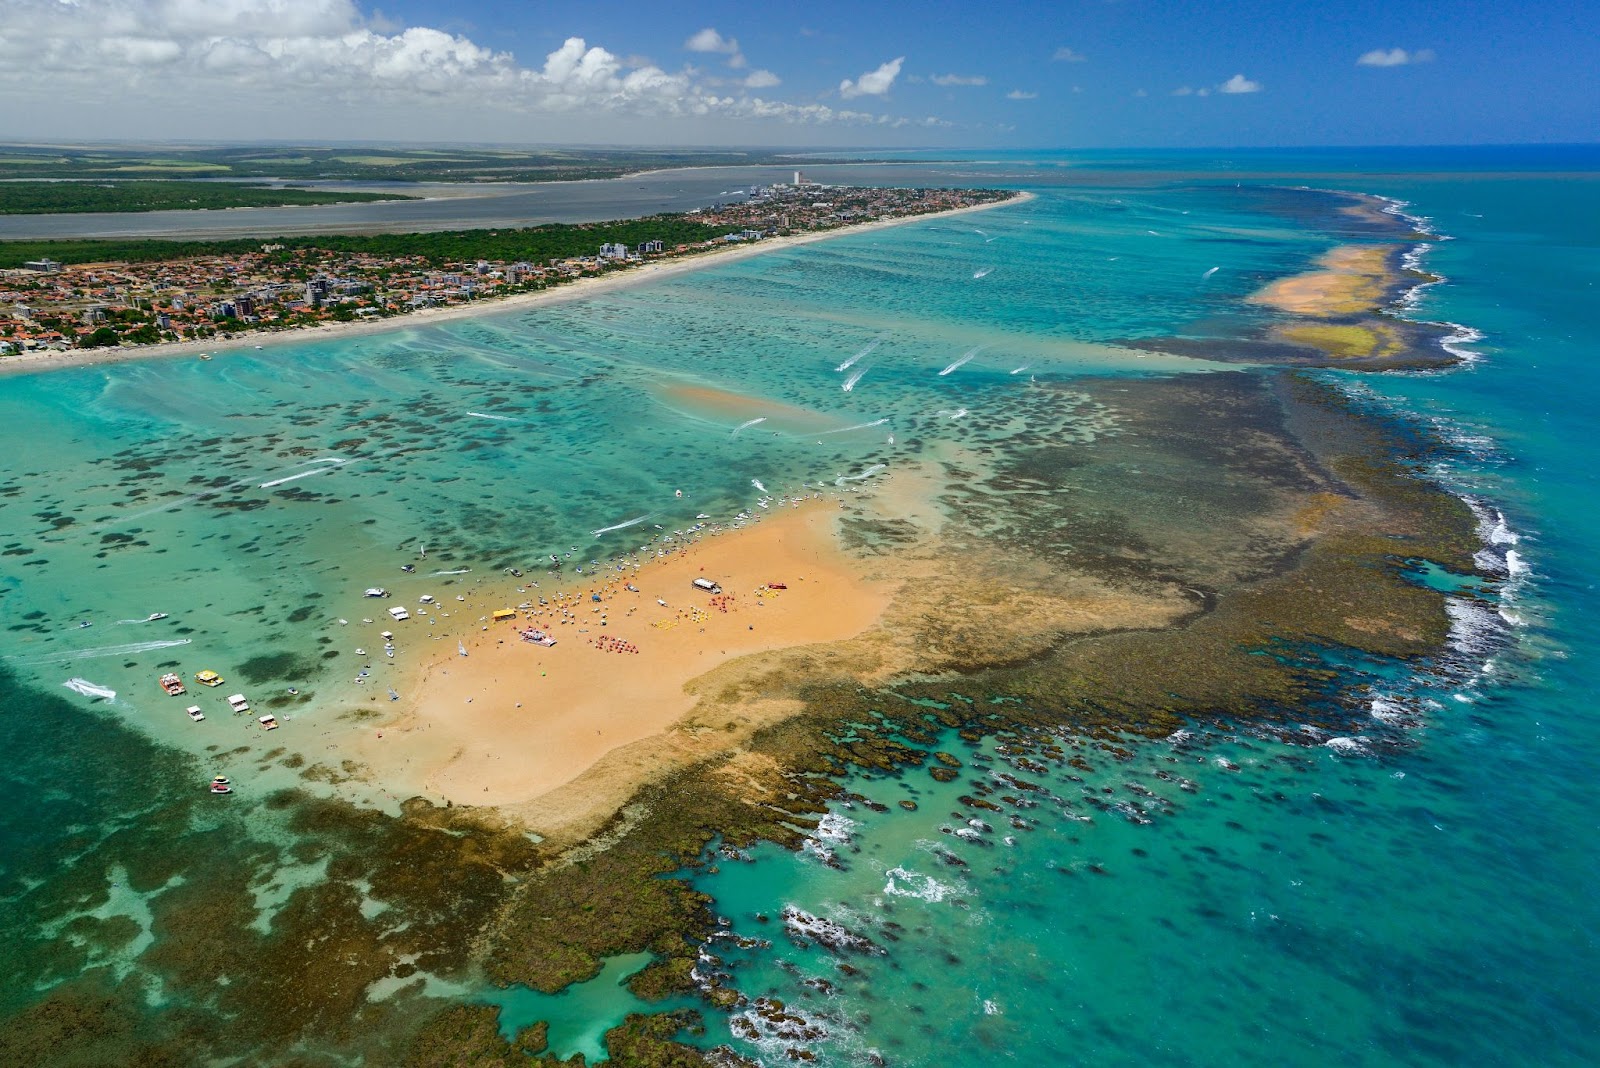 Ilha de Areia Vermelha, uma das famosas praias de João Pessoa. O longo banco de areia alaranjada fica em meio ao azul intenso do mar, não muito distante do continente. É possível ver algumas embarcações na água e banhistas espalhados pela areia